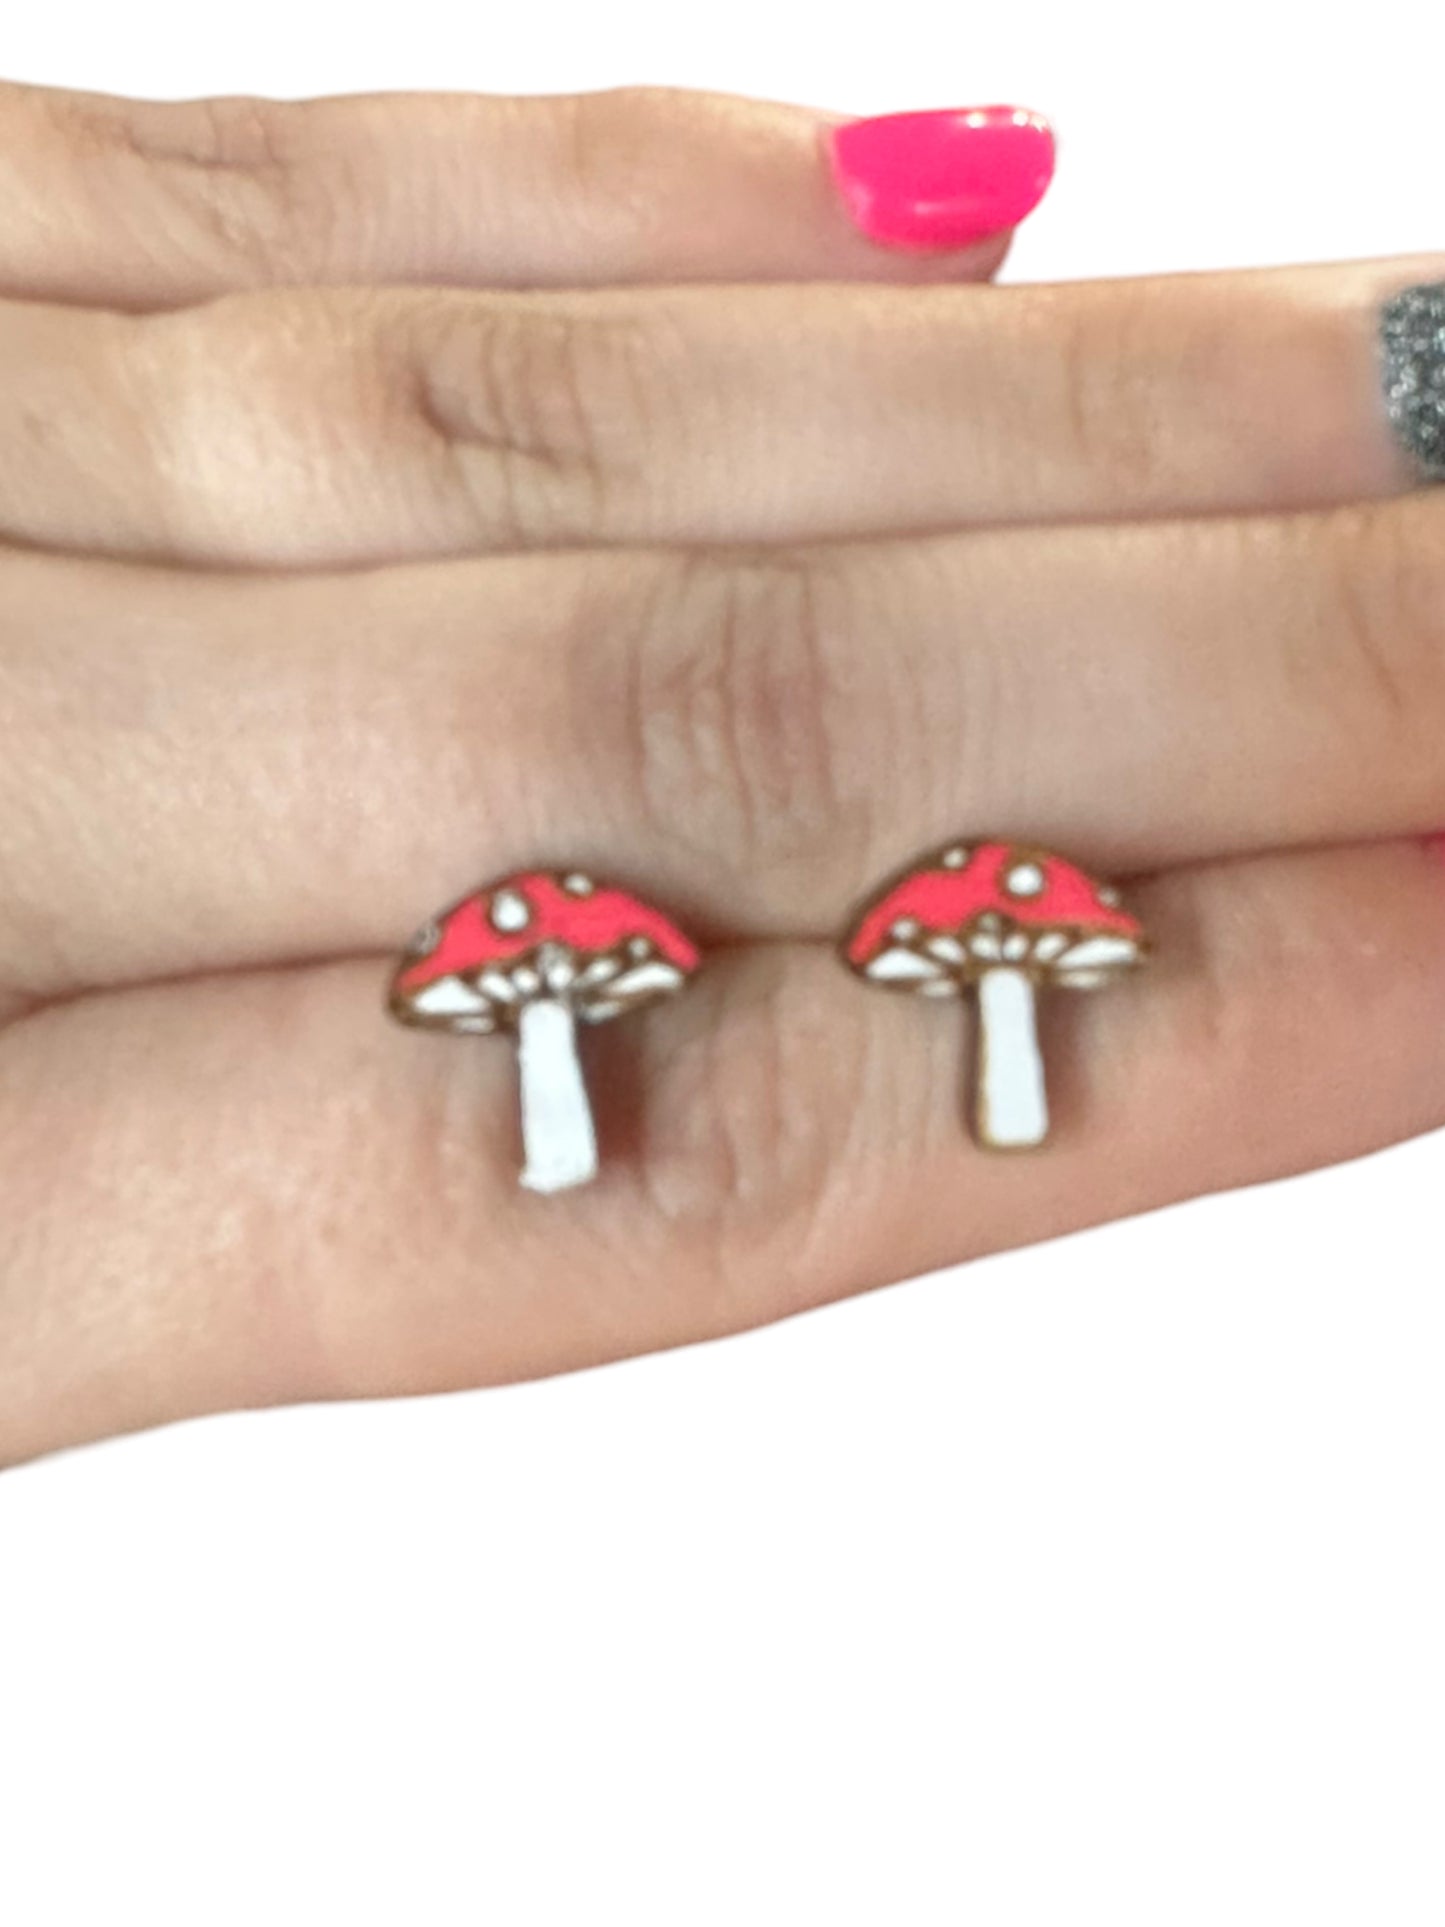 Hypoallergenic Hand Painted Mushroom Laser Engraved Wood Stud Earrings